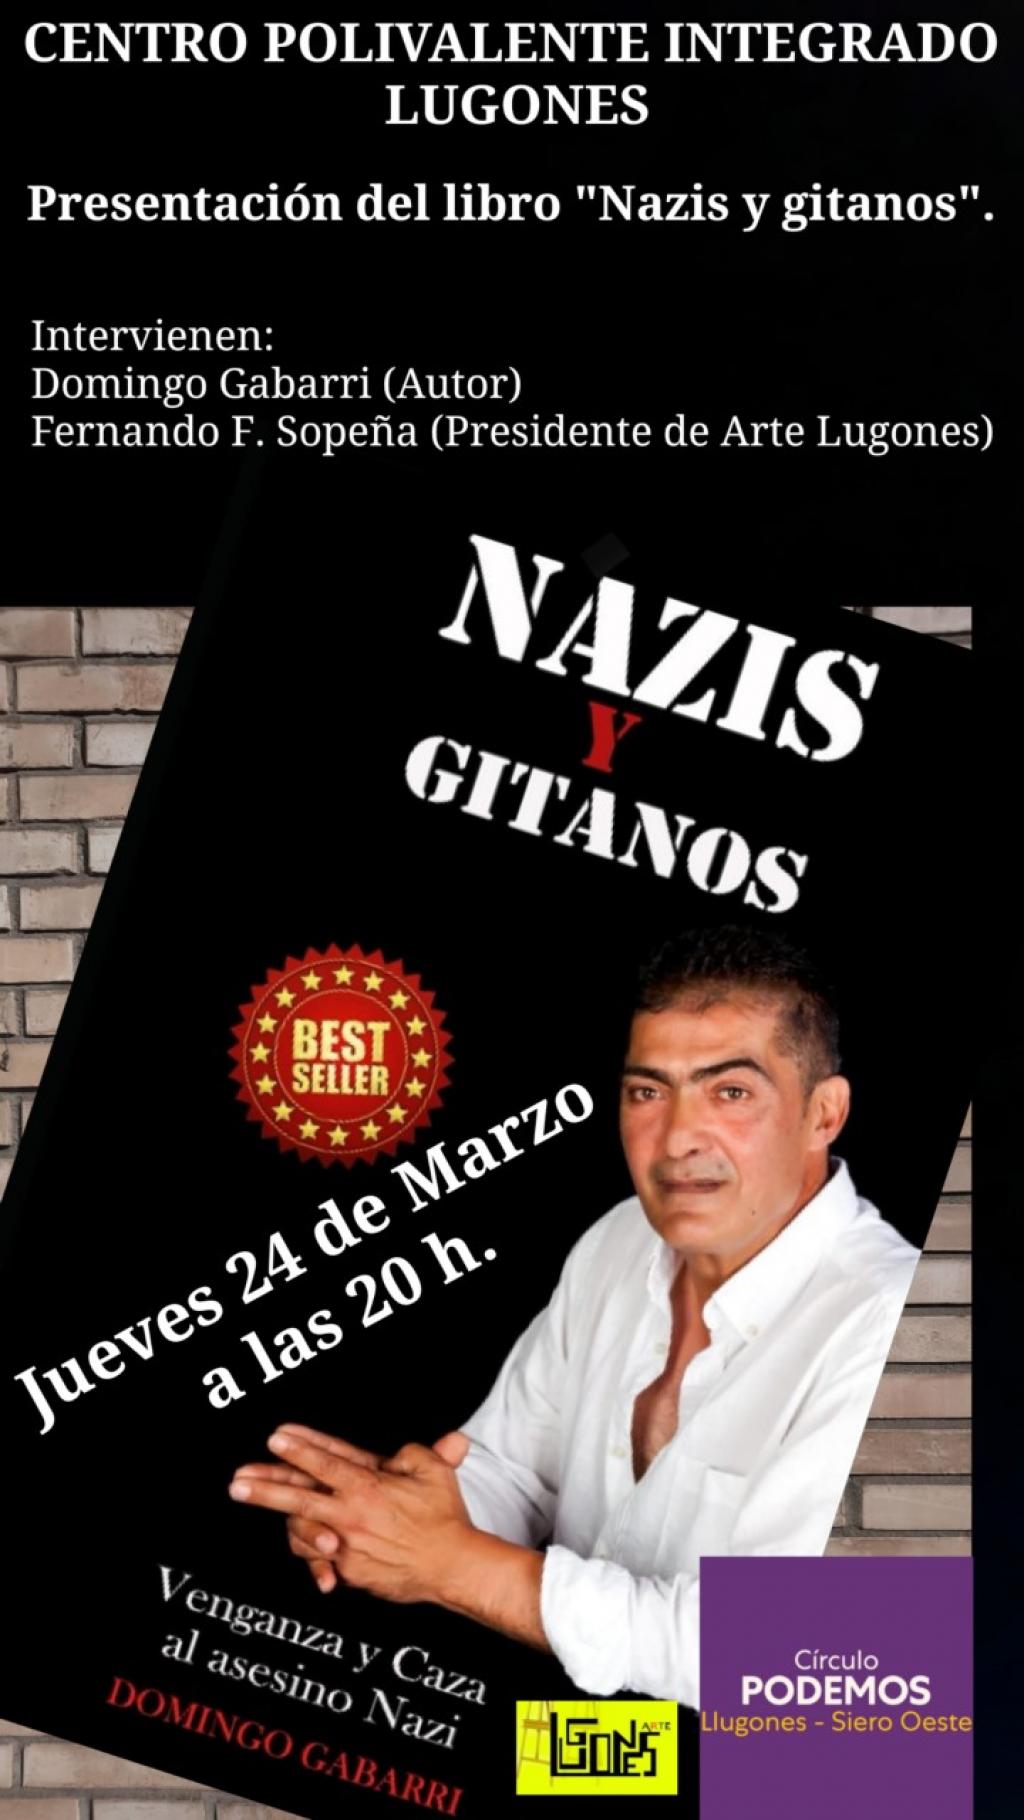 El Tapin - Domingo Gabarri presentará su libro "Nazis y Gitanos"el jueves 24 de marzo en el Centro Polivalente de Lugones